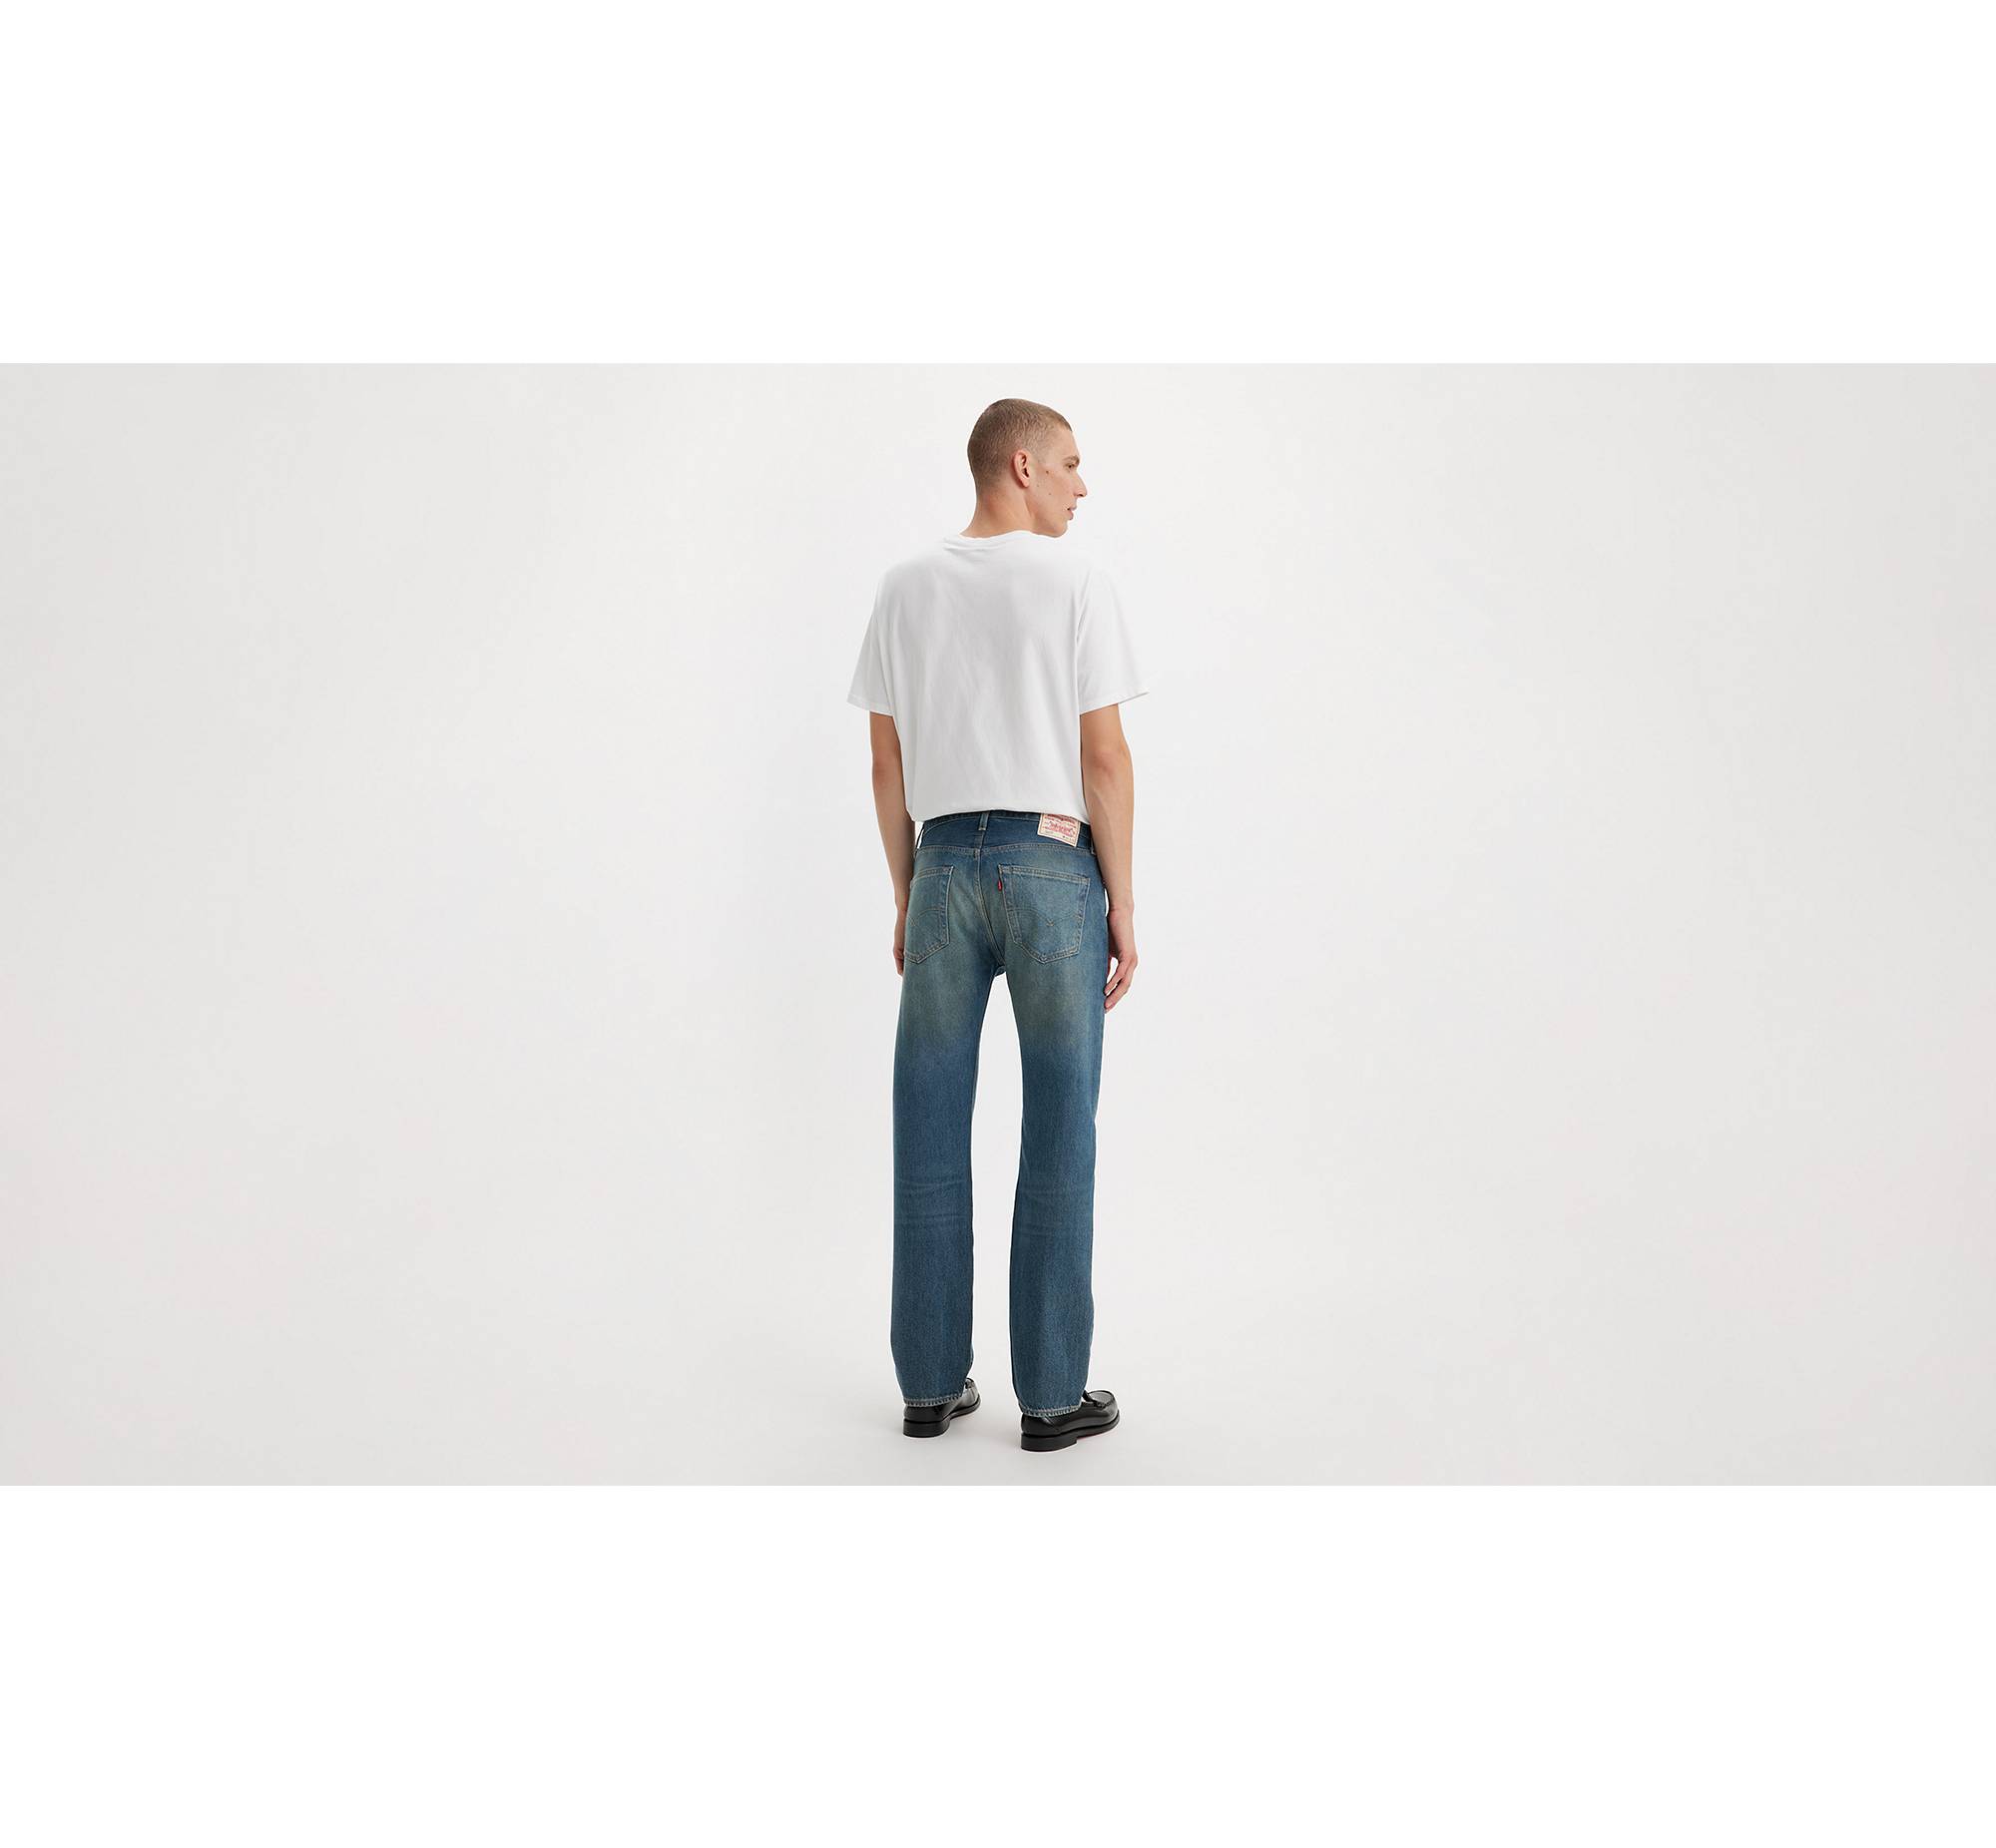 Levis 501 Original Fit Pants Men's Jeans Leisure Pant Blue 00501-2367 Denim  for sale online